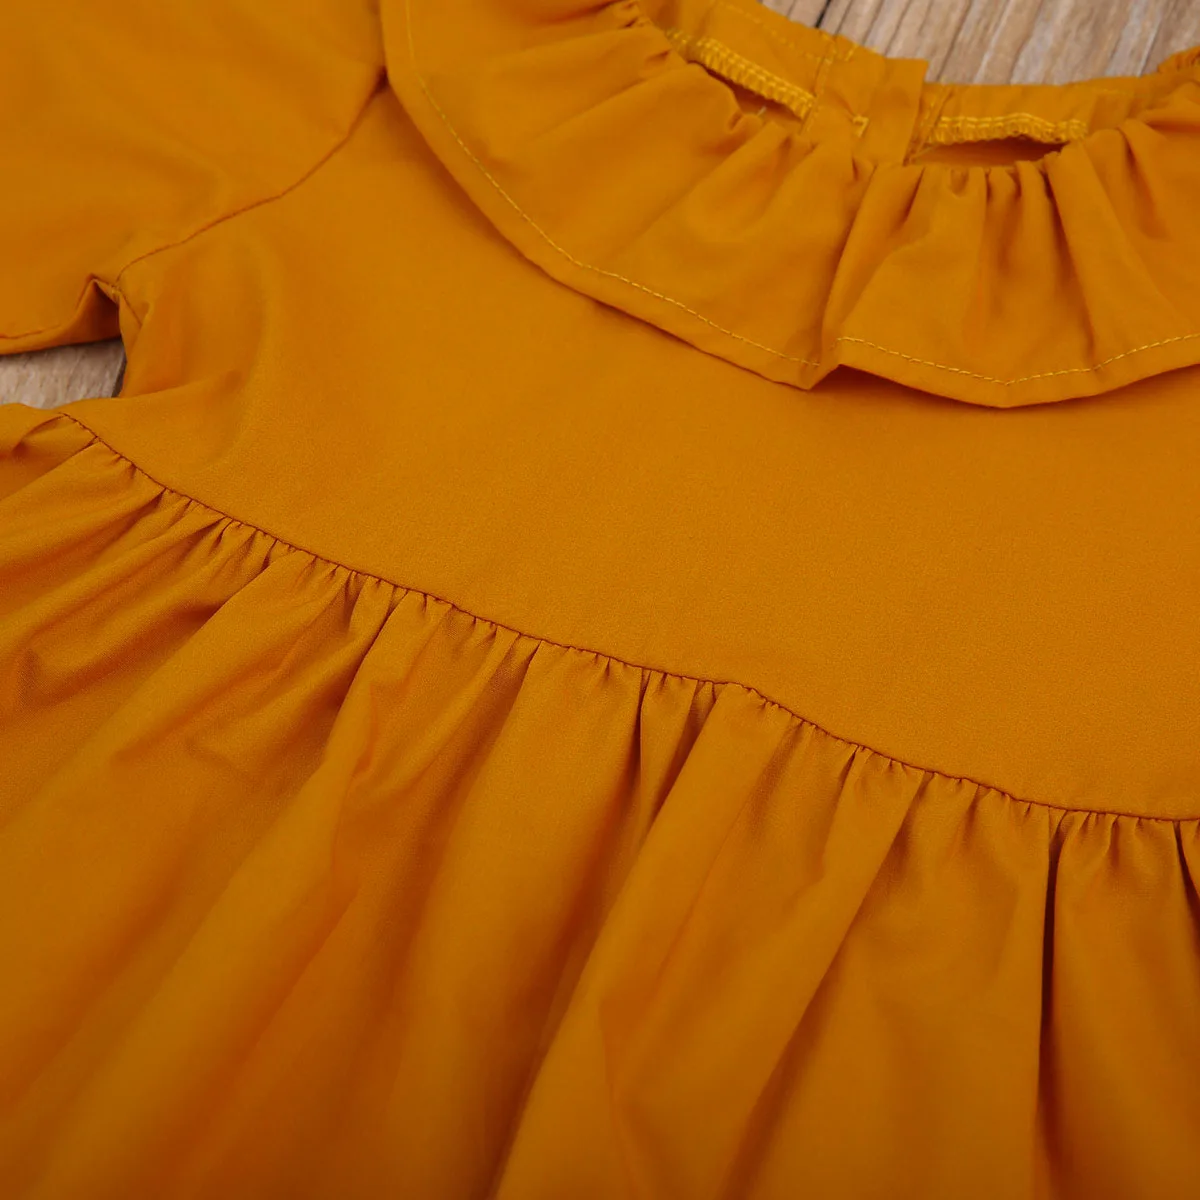 Pudcoco/топы с длинными рукавами для маленьких девочек 0-24 месяцев, короткая драпированная блузка с длинными рукавами, одежда